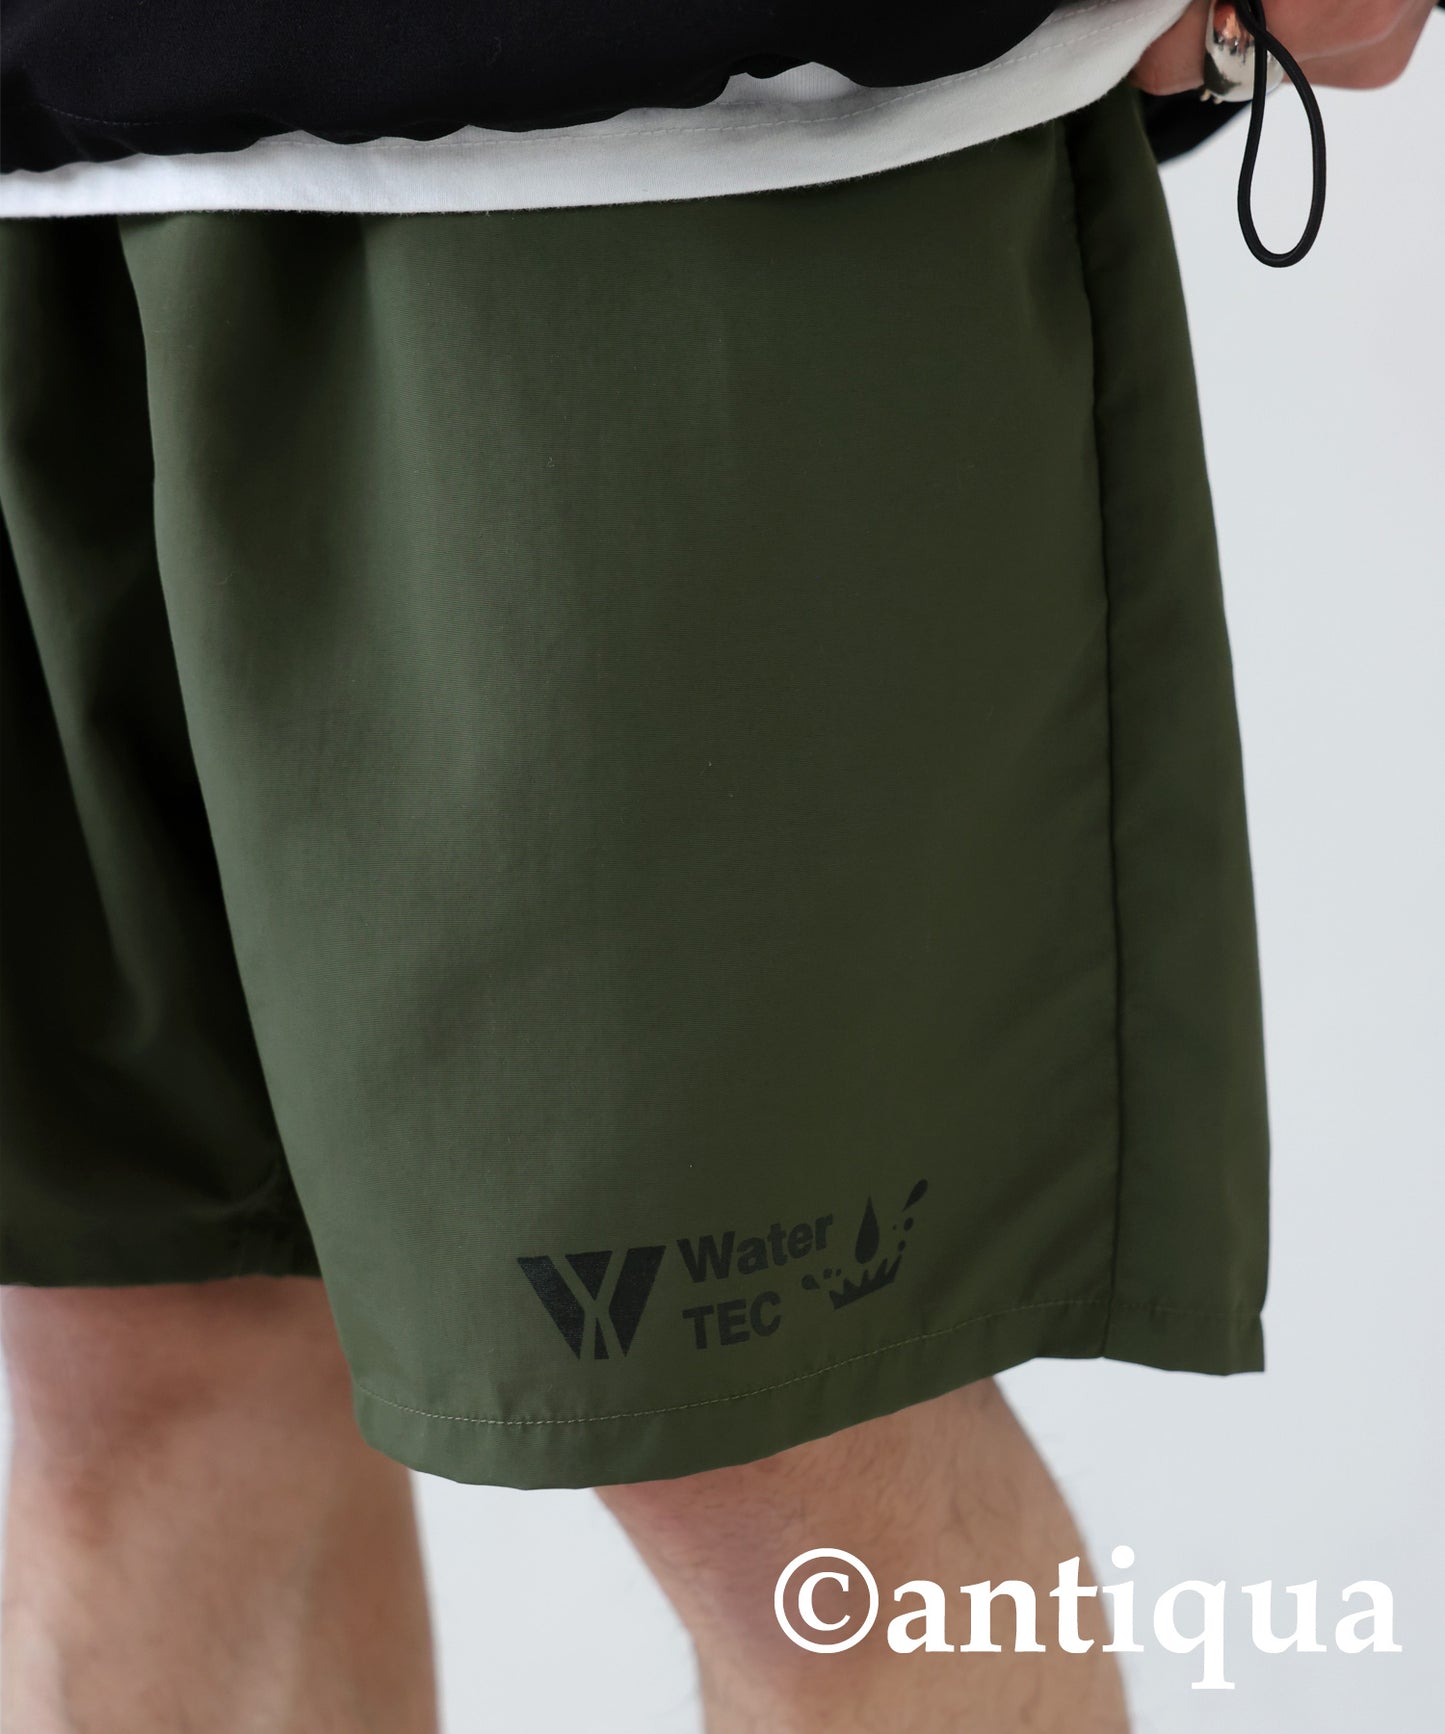 Water -repellent pants for amphibious Men's shorts plain